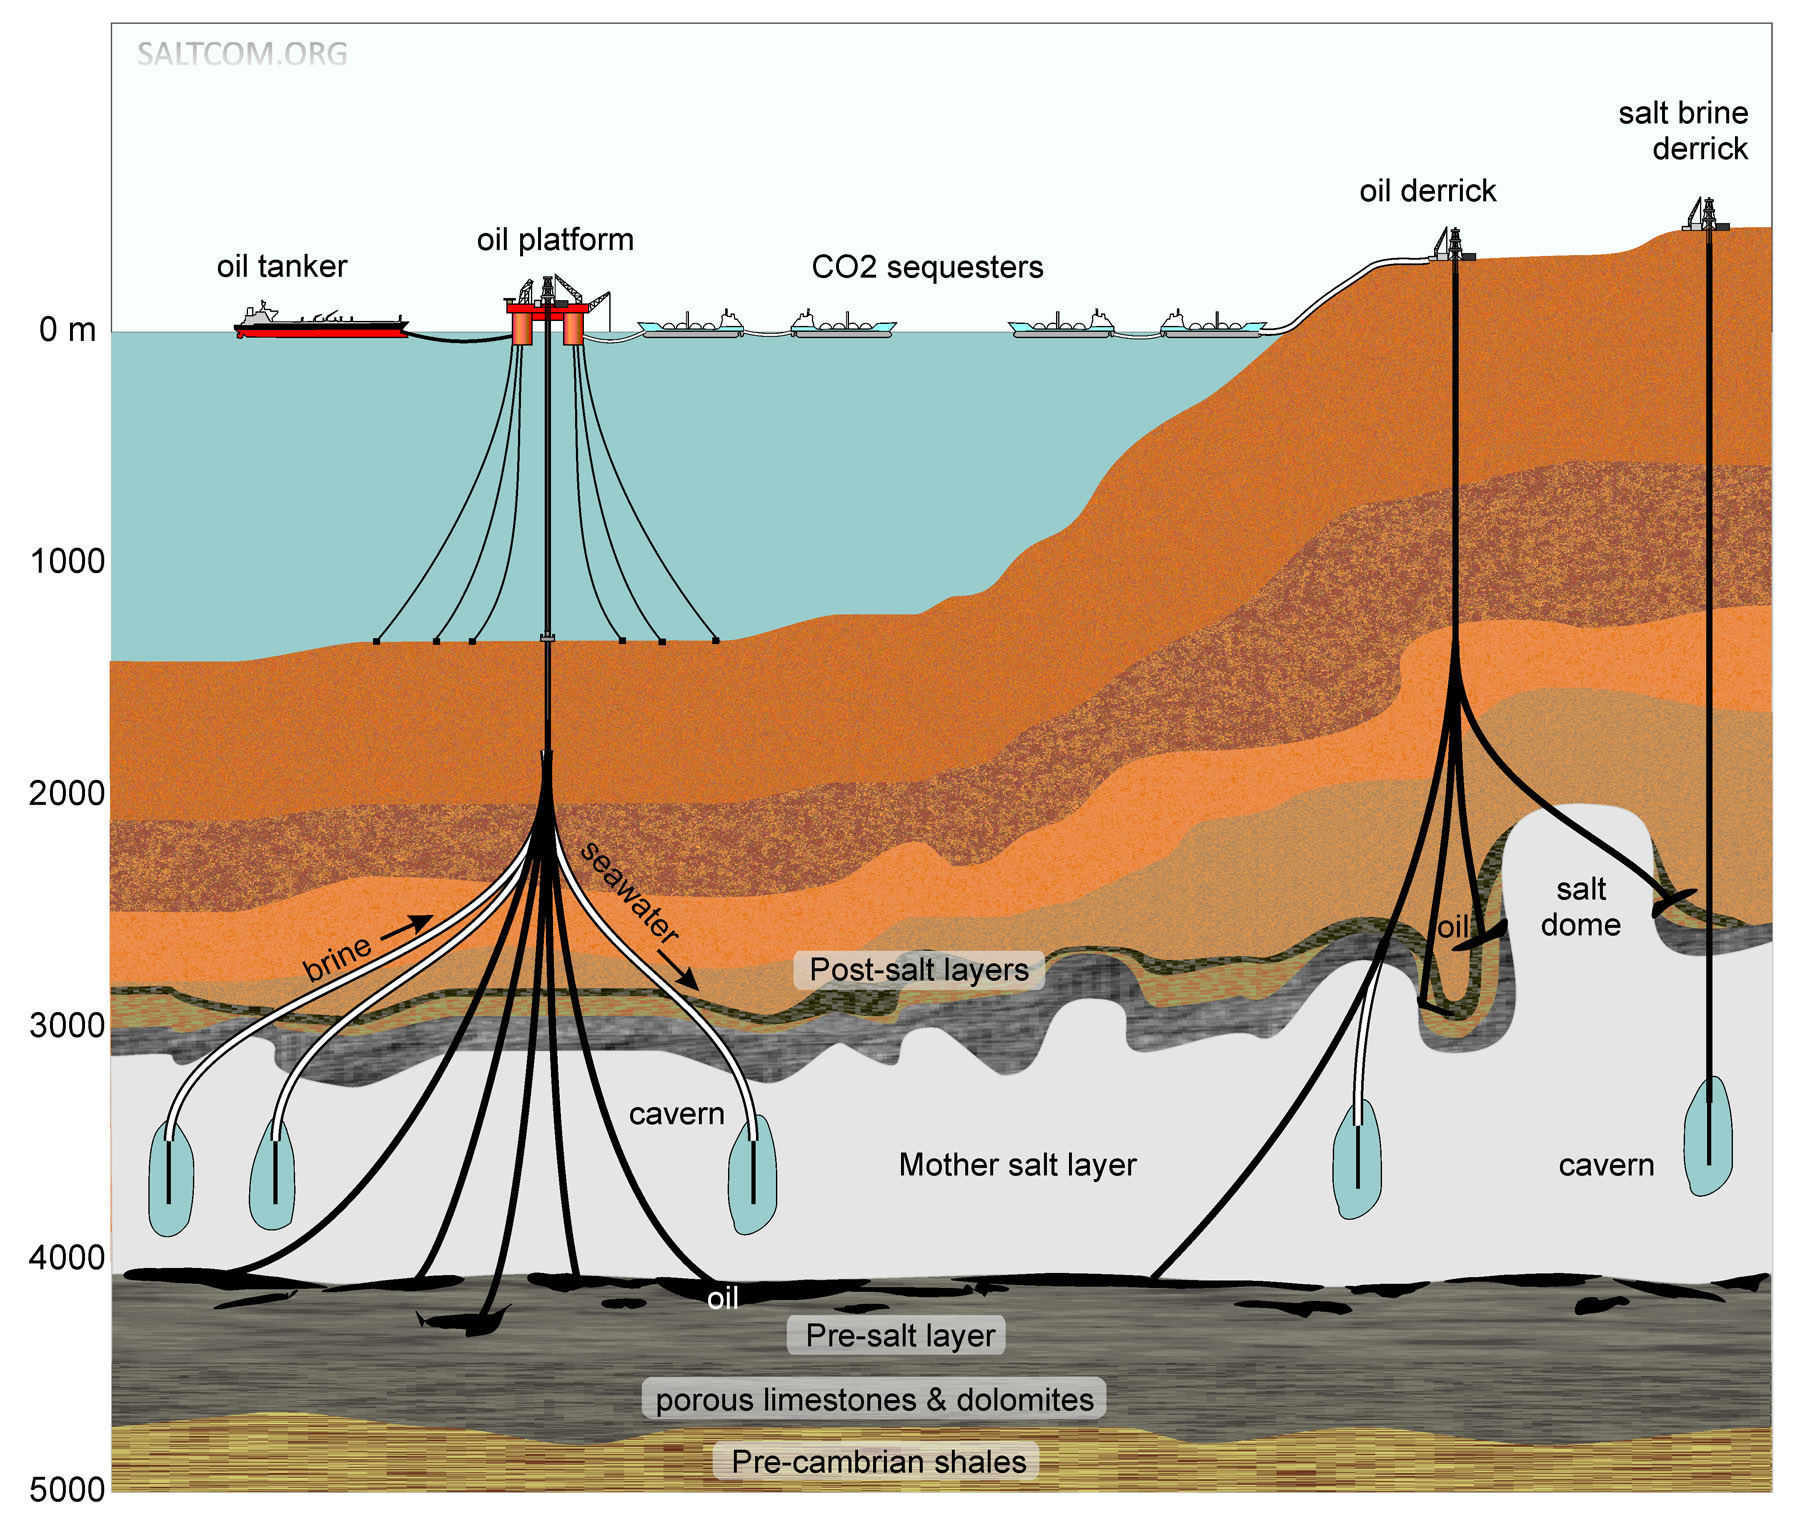  Salz-sole-mining. Erstellung von Kavernen im Salzstock Schichten.
CO2-sondert. Öl-Plattform. Salz-sole-Bohrturm.
Mother salt layer. Salt dome. Porus Kalkstein & Dolomiten. 
STOPPEN wir die GLOBALE ERWÄRMUNG!
Kasachische Wissenschaftler haben vorgeschlagen, den Ozean zu salzen.
SALTCOM.ORG
